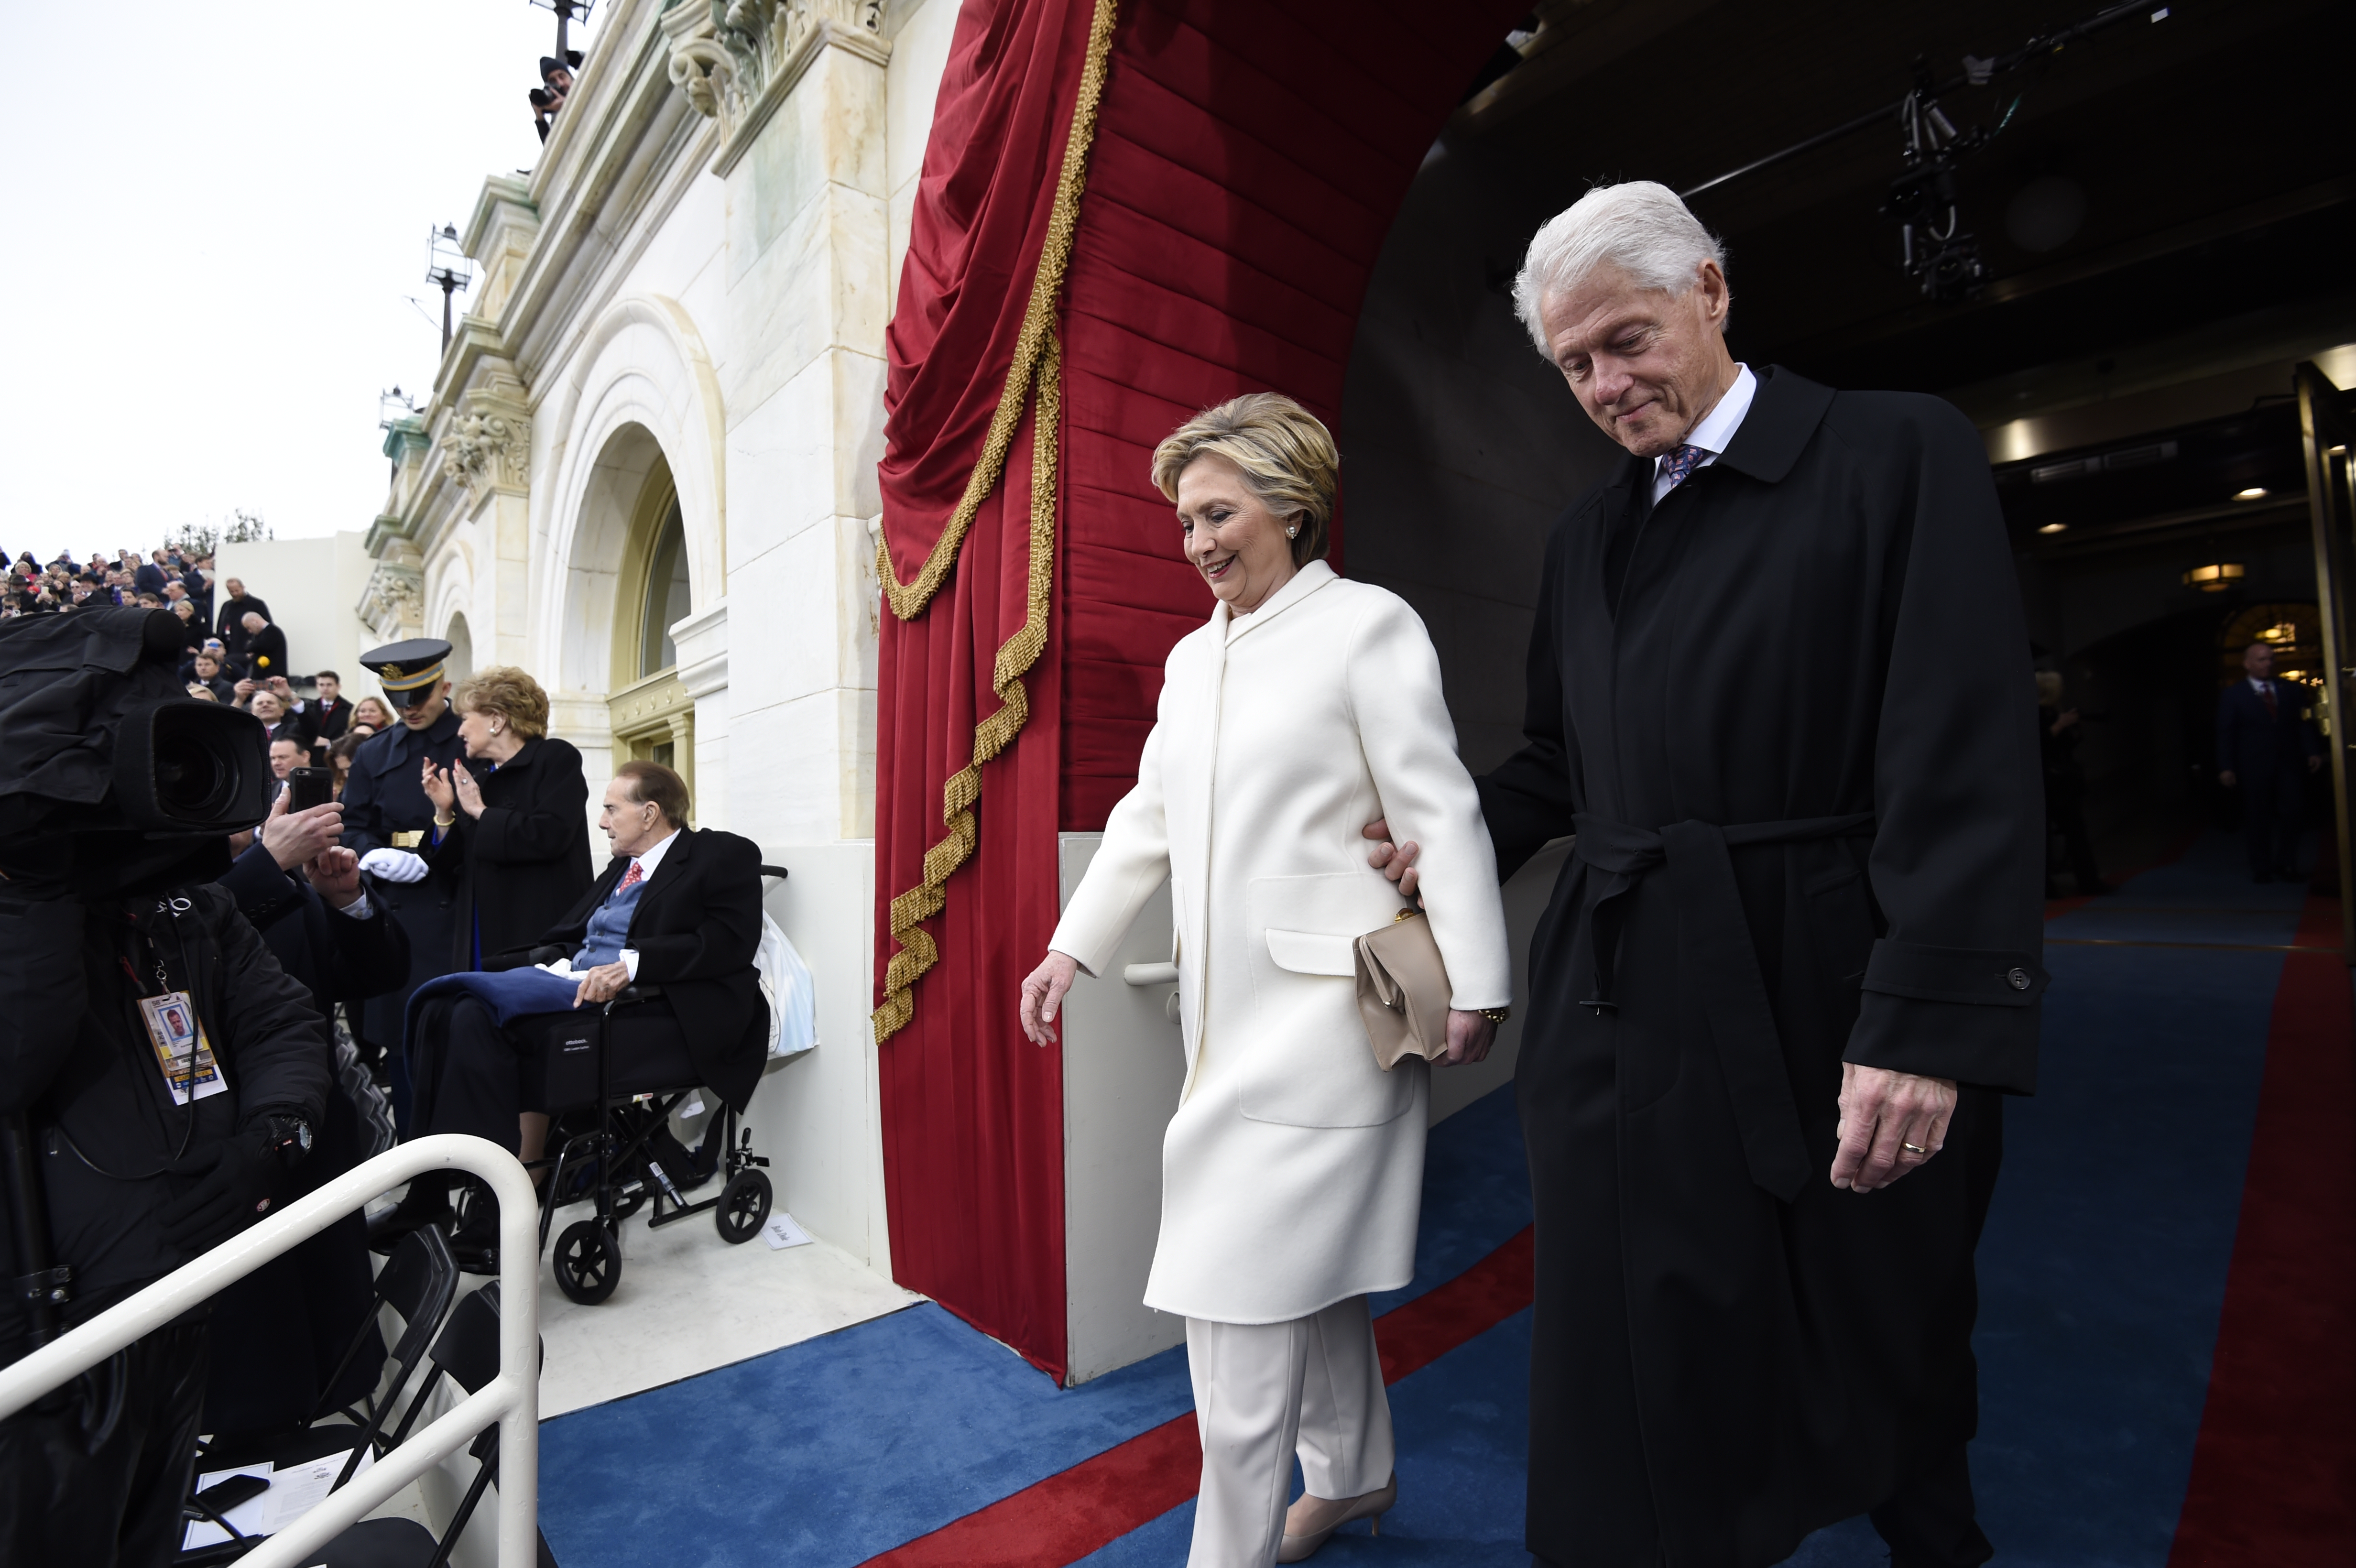 Хилари Клинтън и бившият президент на САЩ Бил Клинтън също пристигнаха на Капитолия за церемонията. Двамата се присъединиха към други бивши президенти и техните съпруги, включително Джордж и Лора Буш.